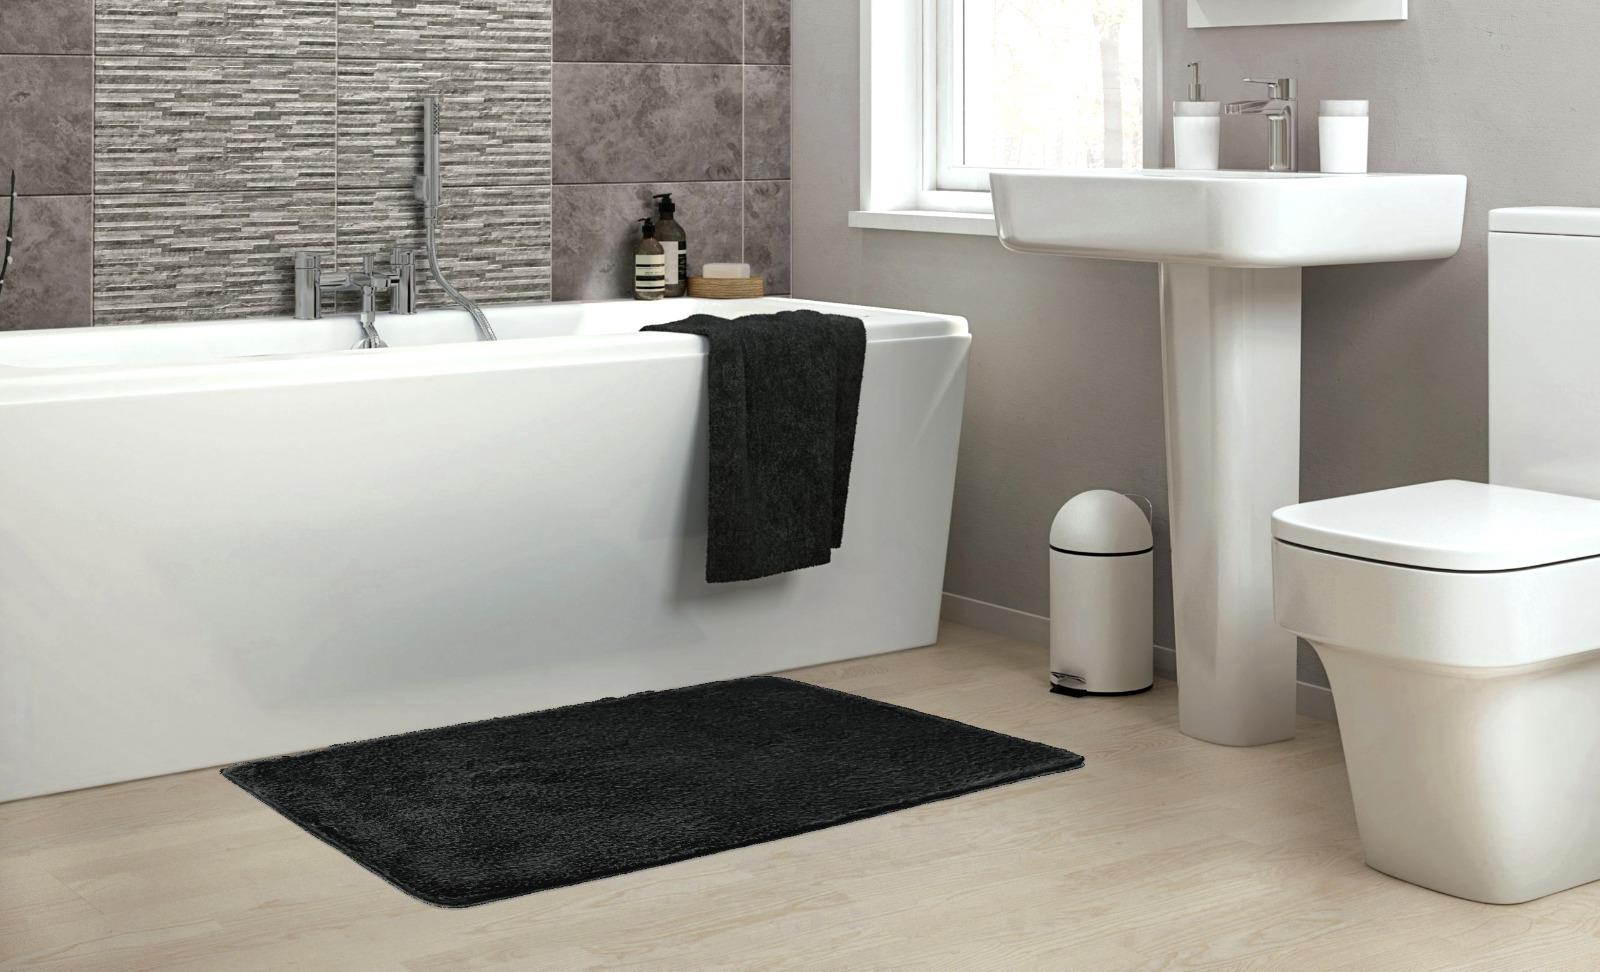 שטיח אמבטיה פרוותי דגם מיקה Soft סופט - שחור נעים במיוחד!